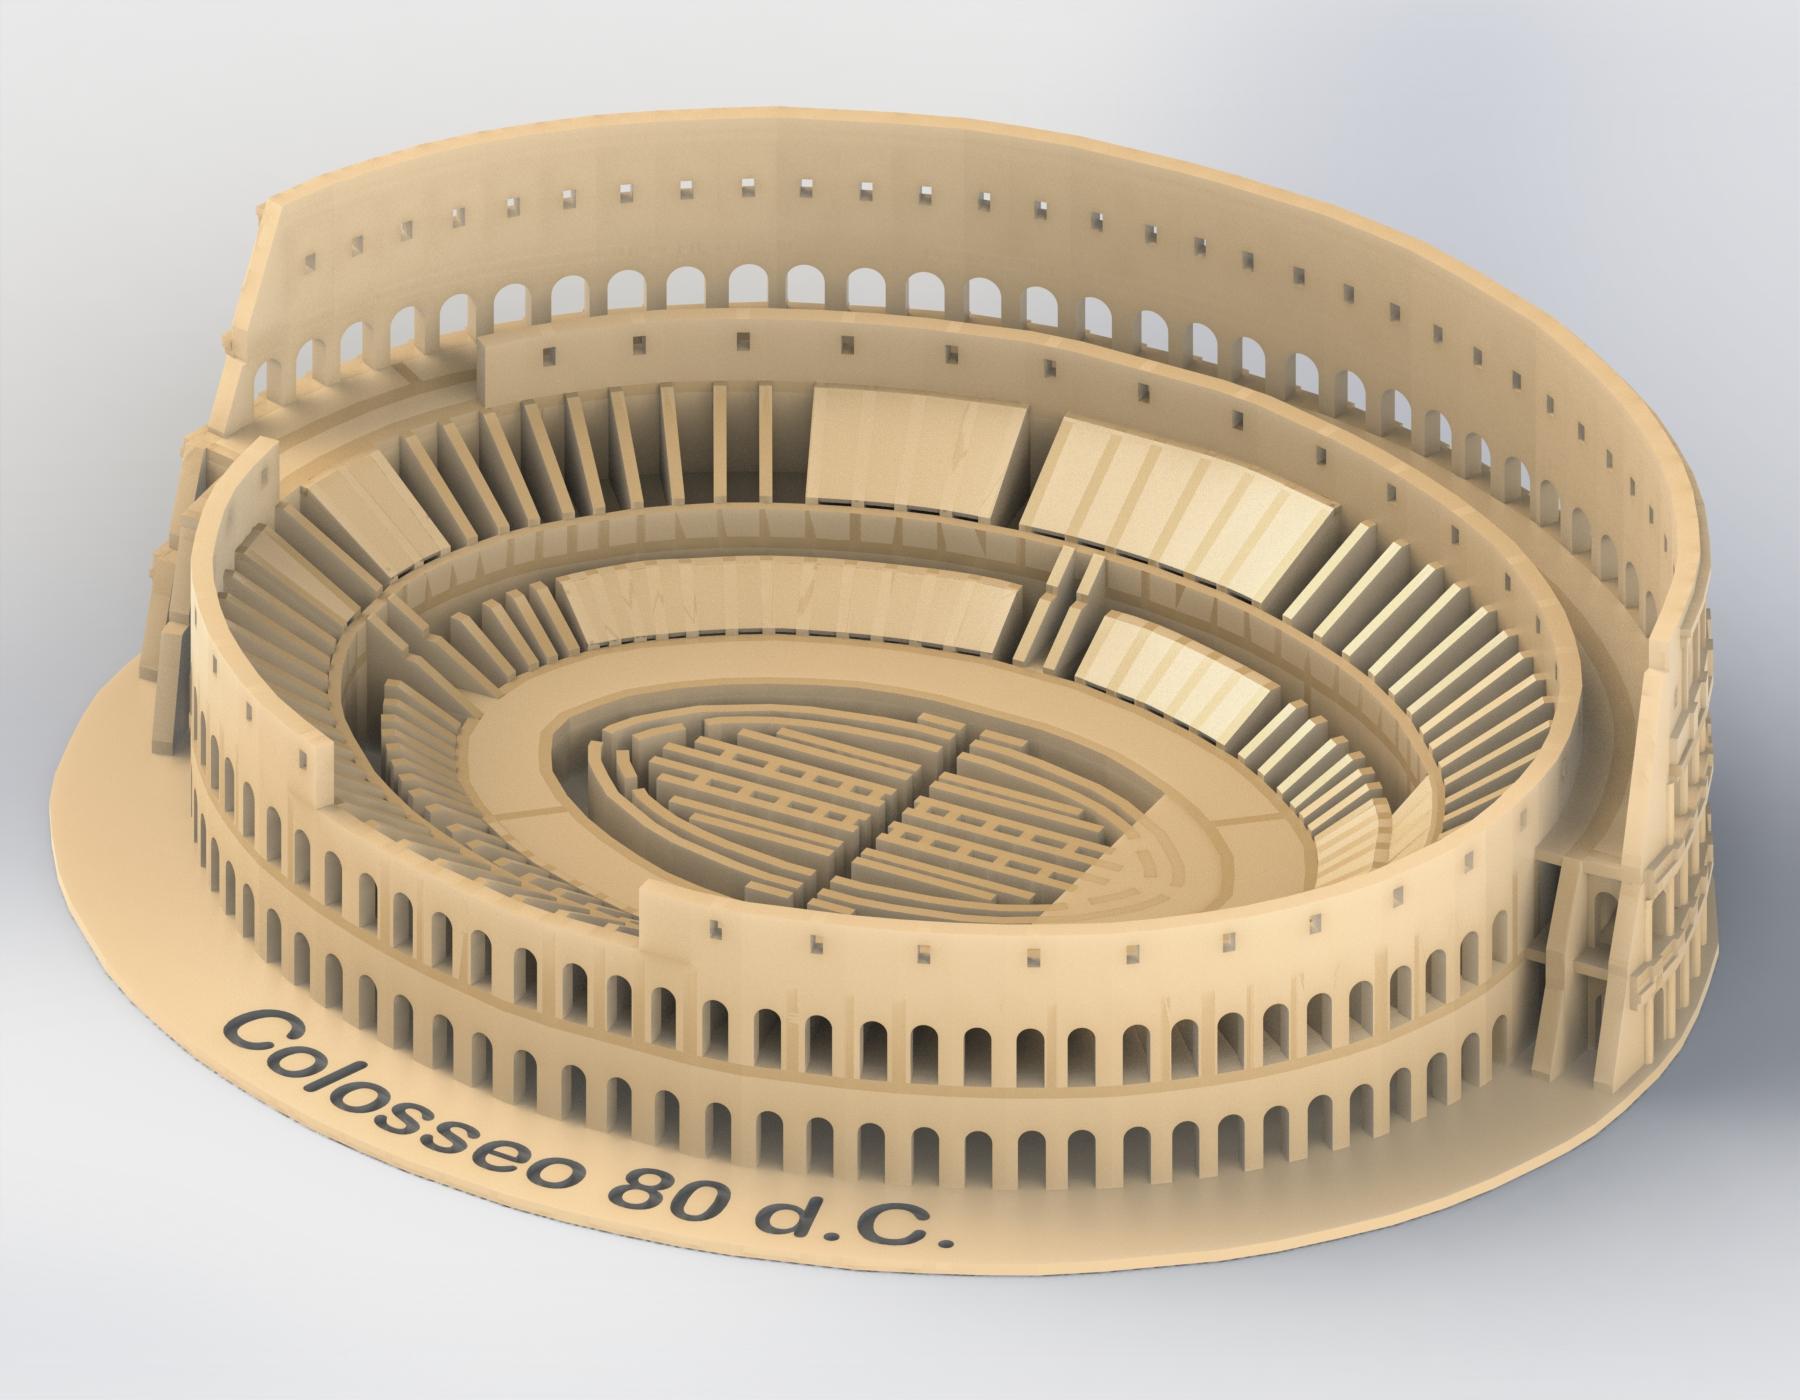 Colosseum 3d model